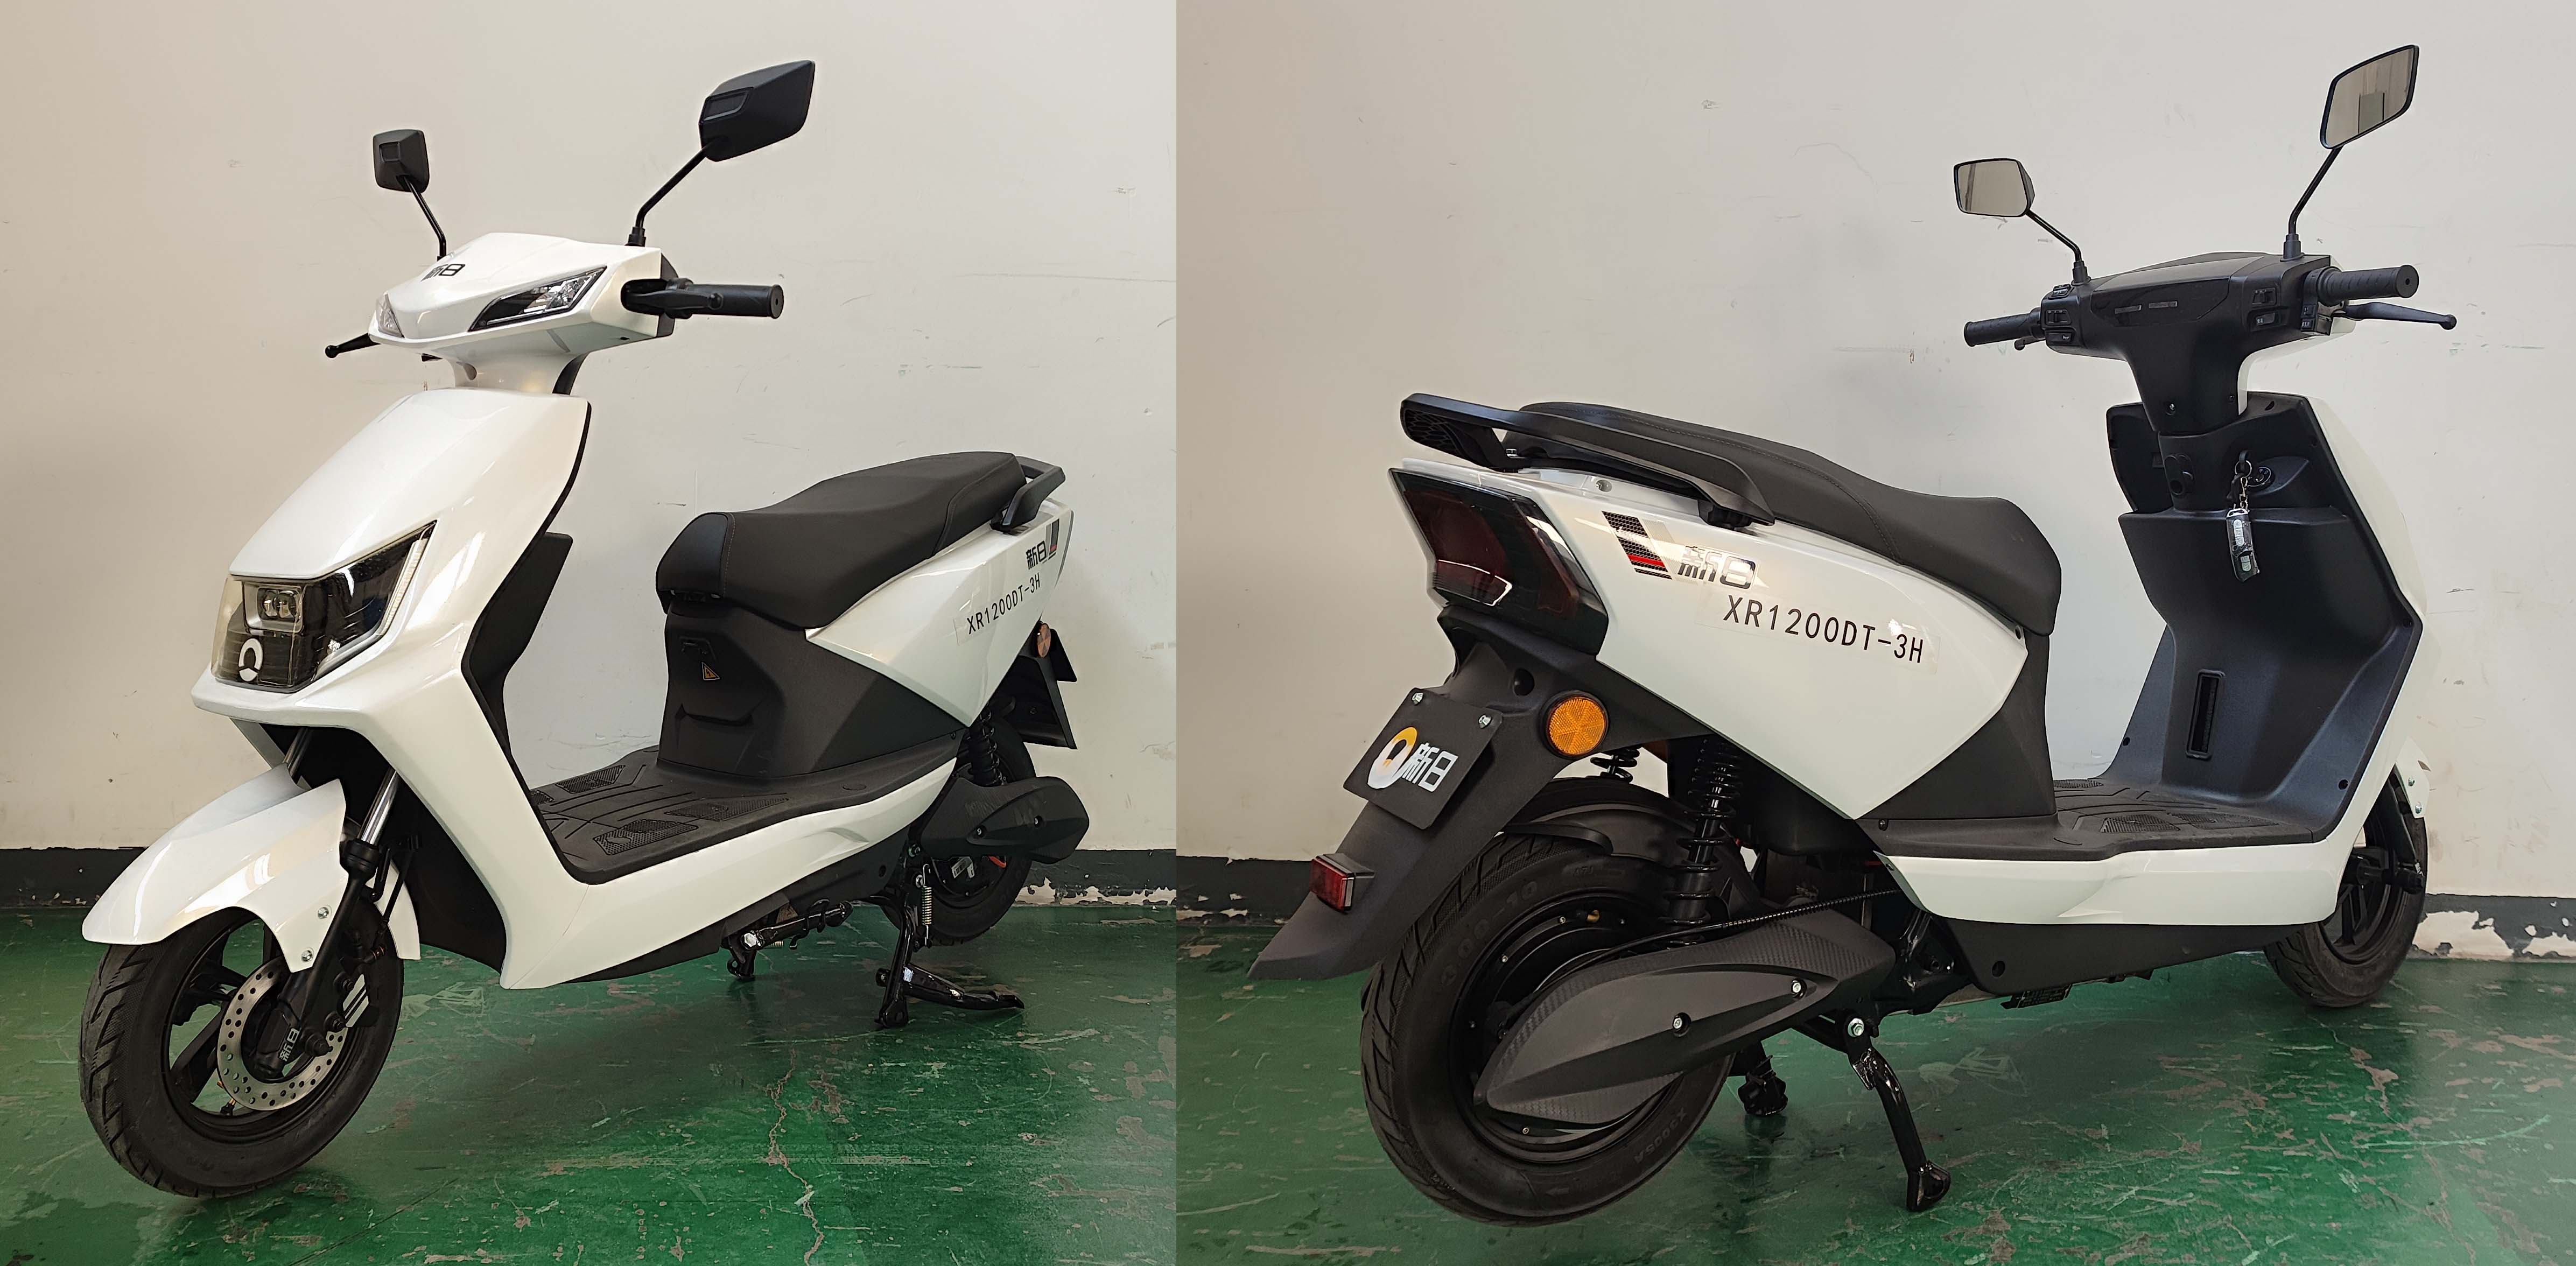 XR1200DT-3H 新日牌纯电动前盘式后盘式/鼓式电动两轮摩托车图片